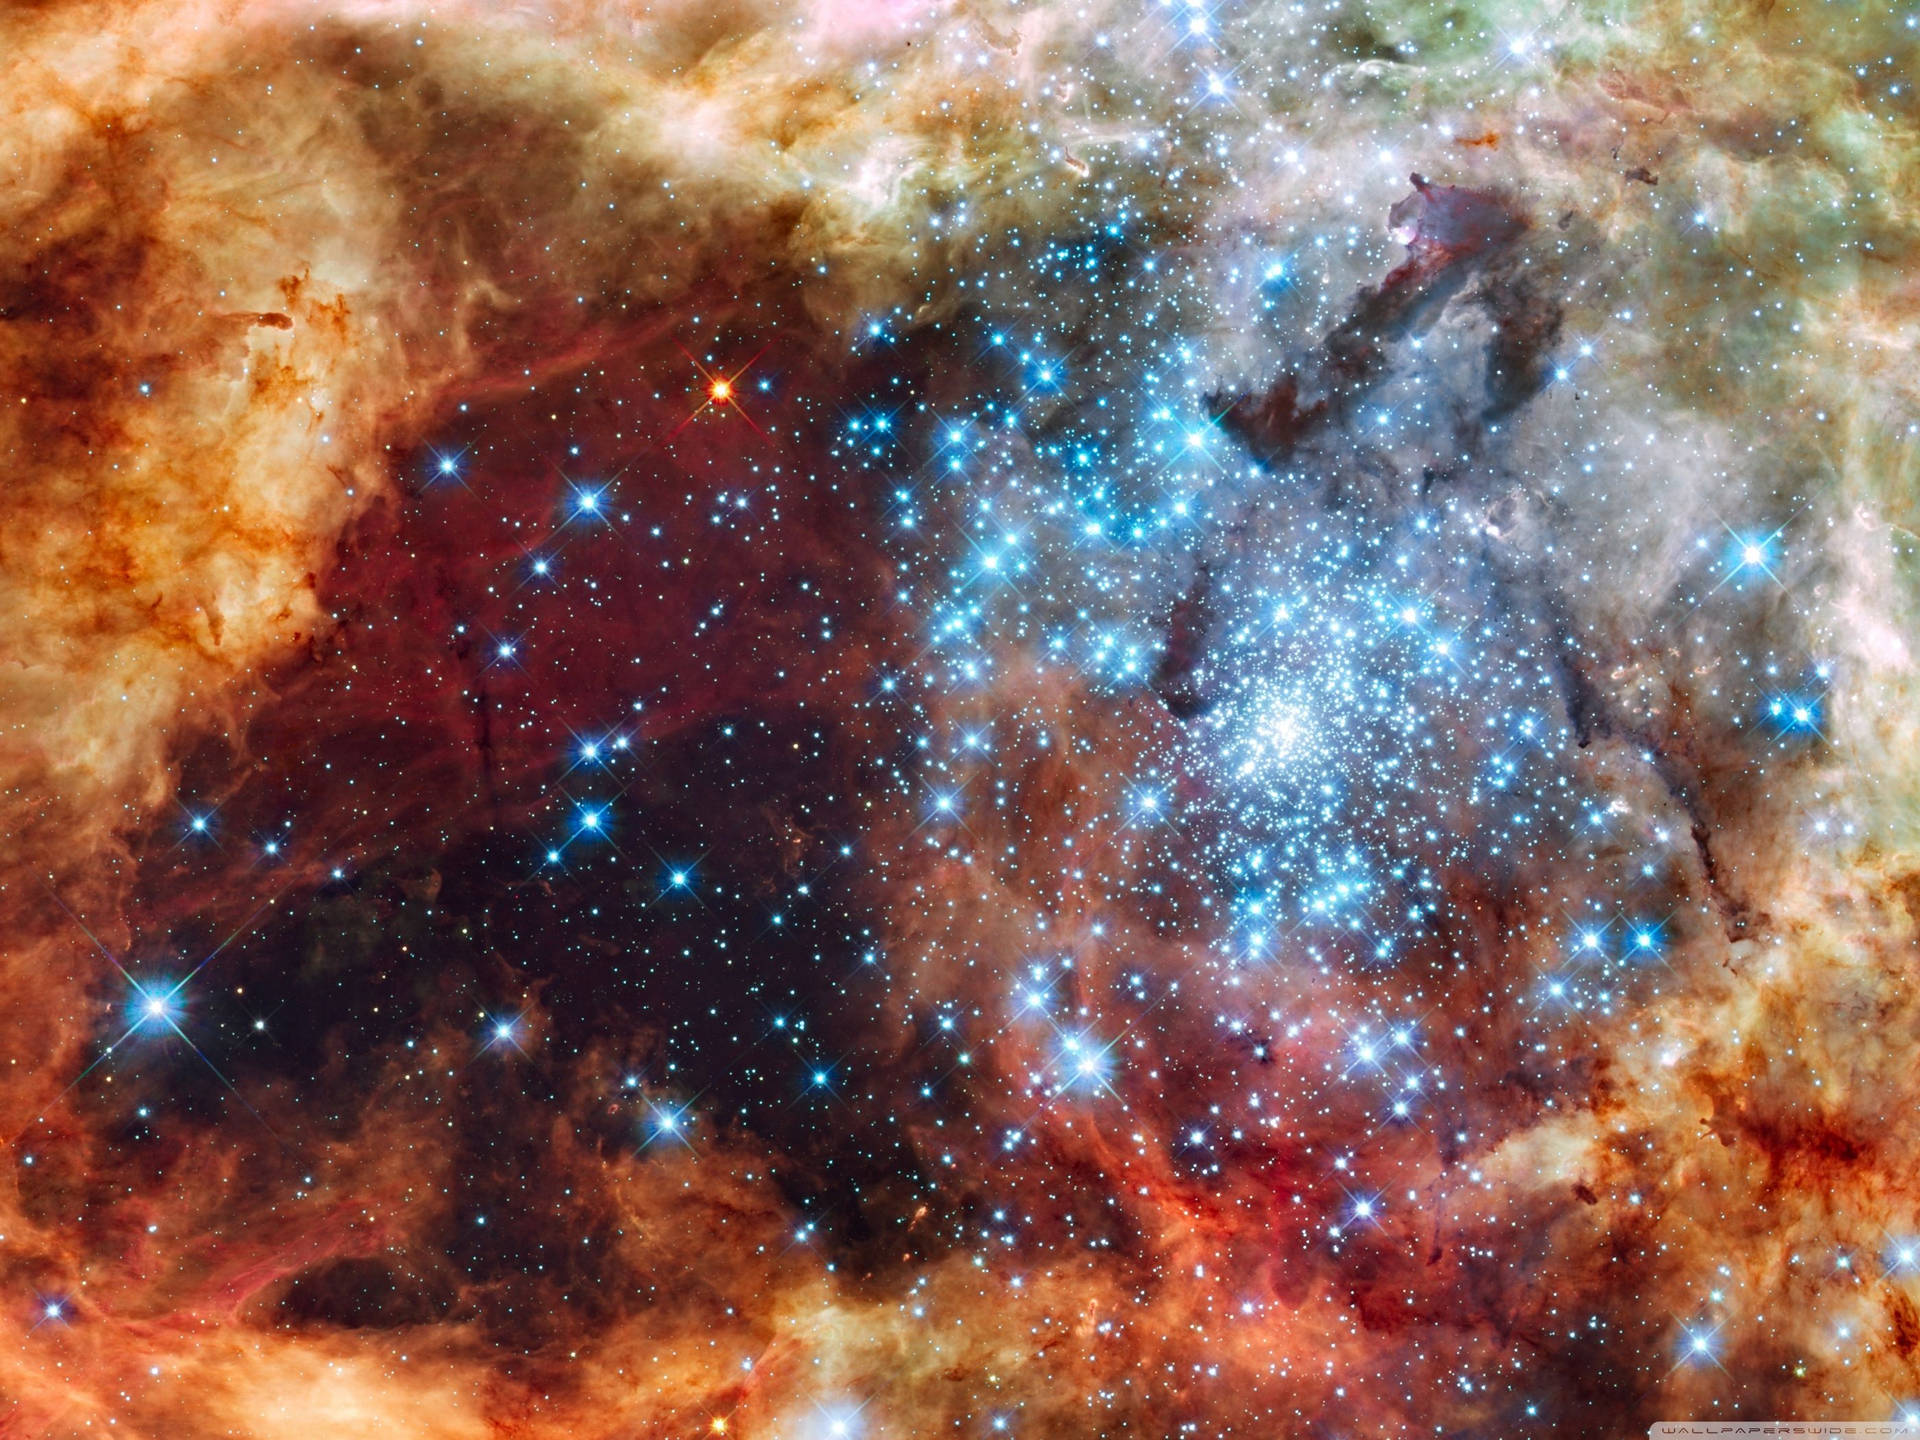 Extrahögupplöst Galaxstjärnor. Wallpaper